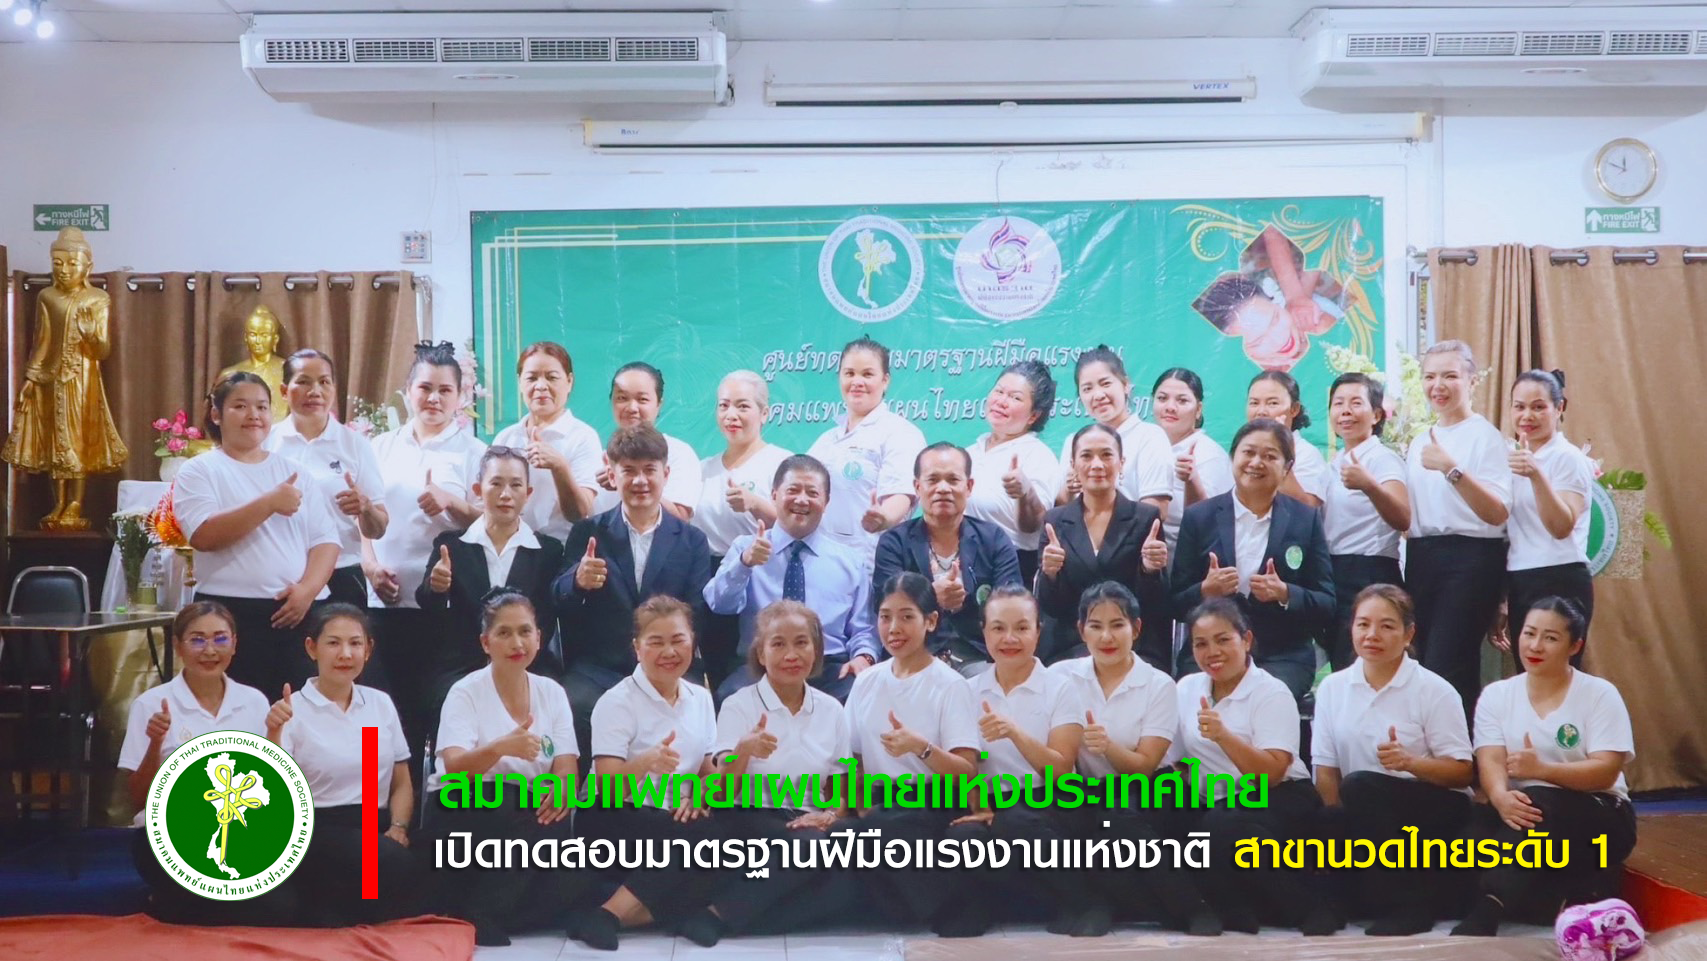 สมาคมแพทย์แผนไทยฯ จัดสอบวัดระดับมาตรฐานฝีมือแรงงาน สาขาพนักงานนวดไทย ระดับ 1